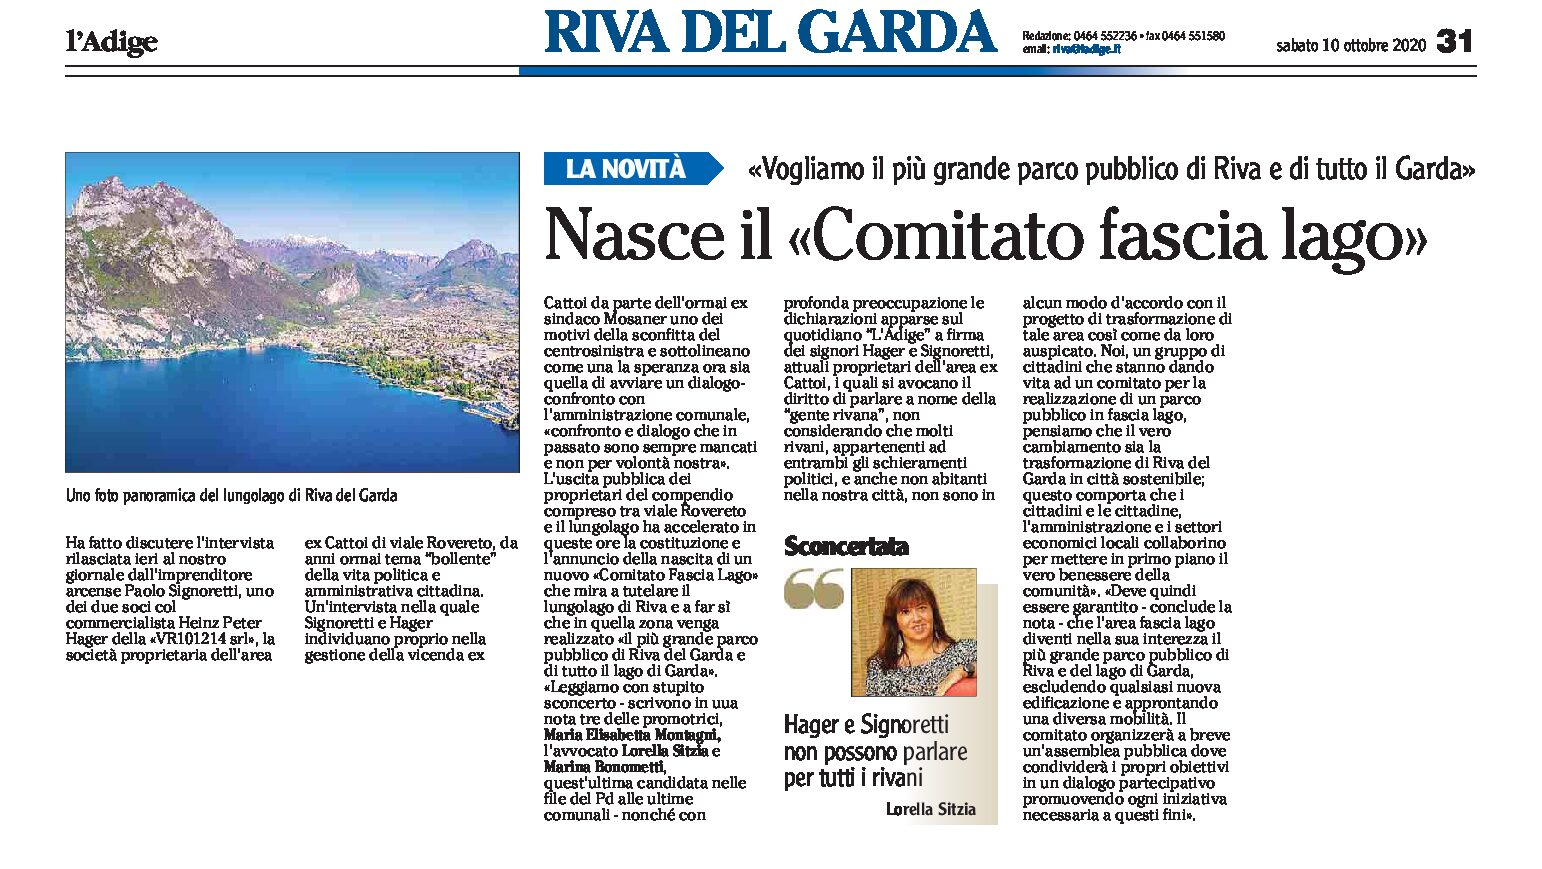 Riva: nasce il Comitato fascia lago “vogliamo il più grande parco pubblico di Riva e del Garda”